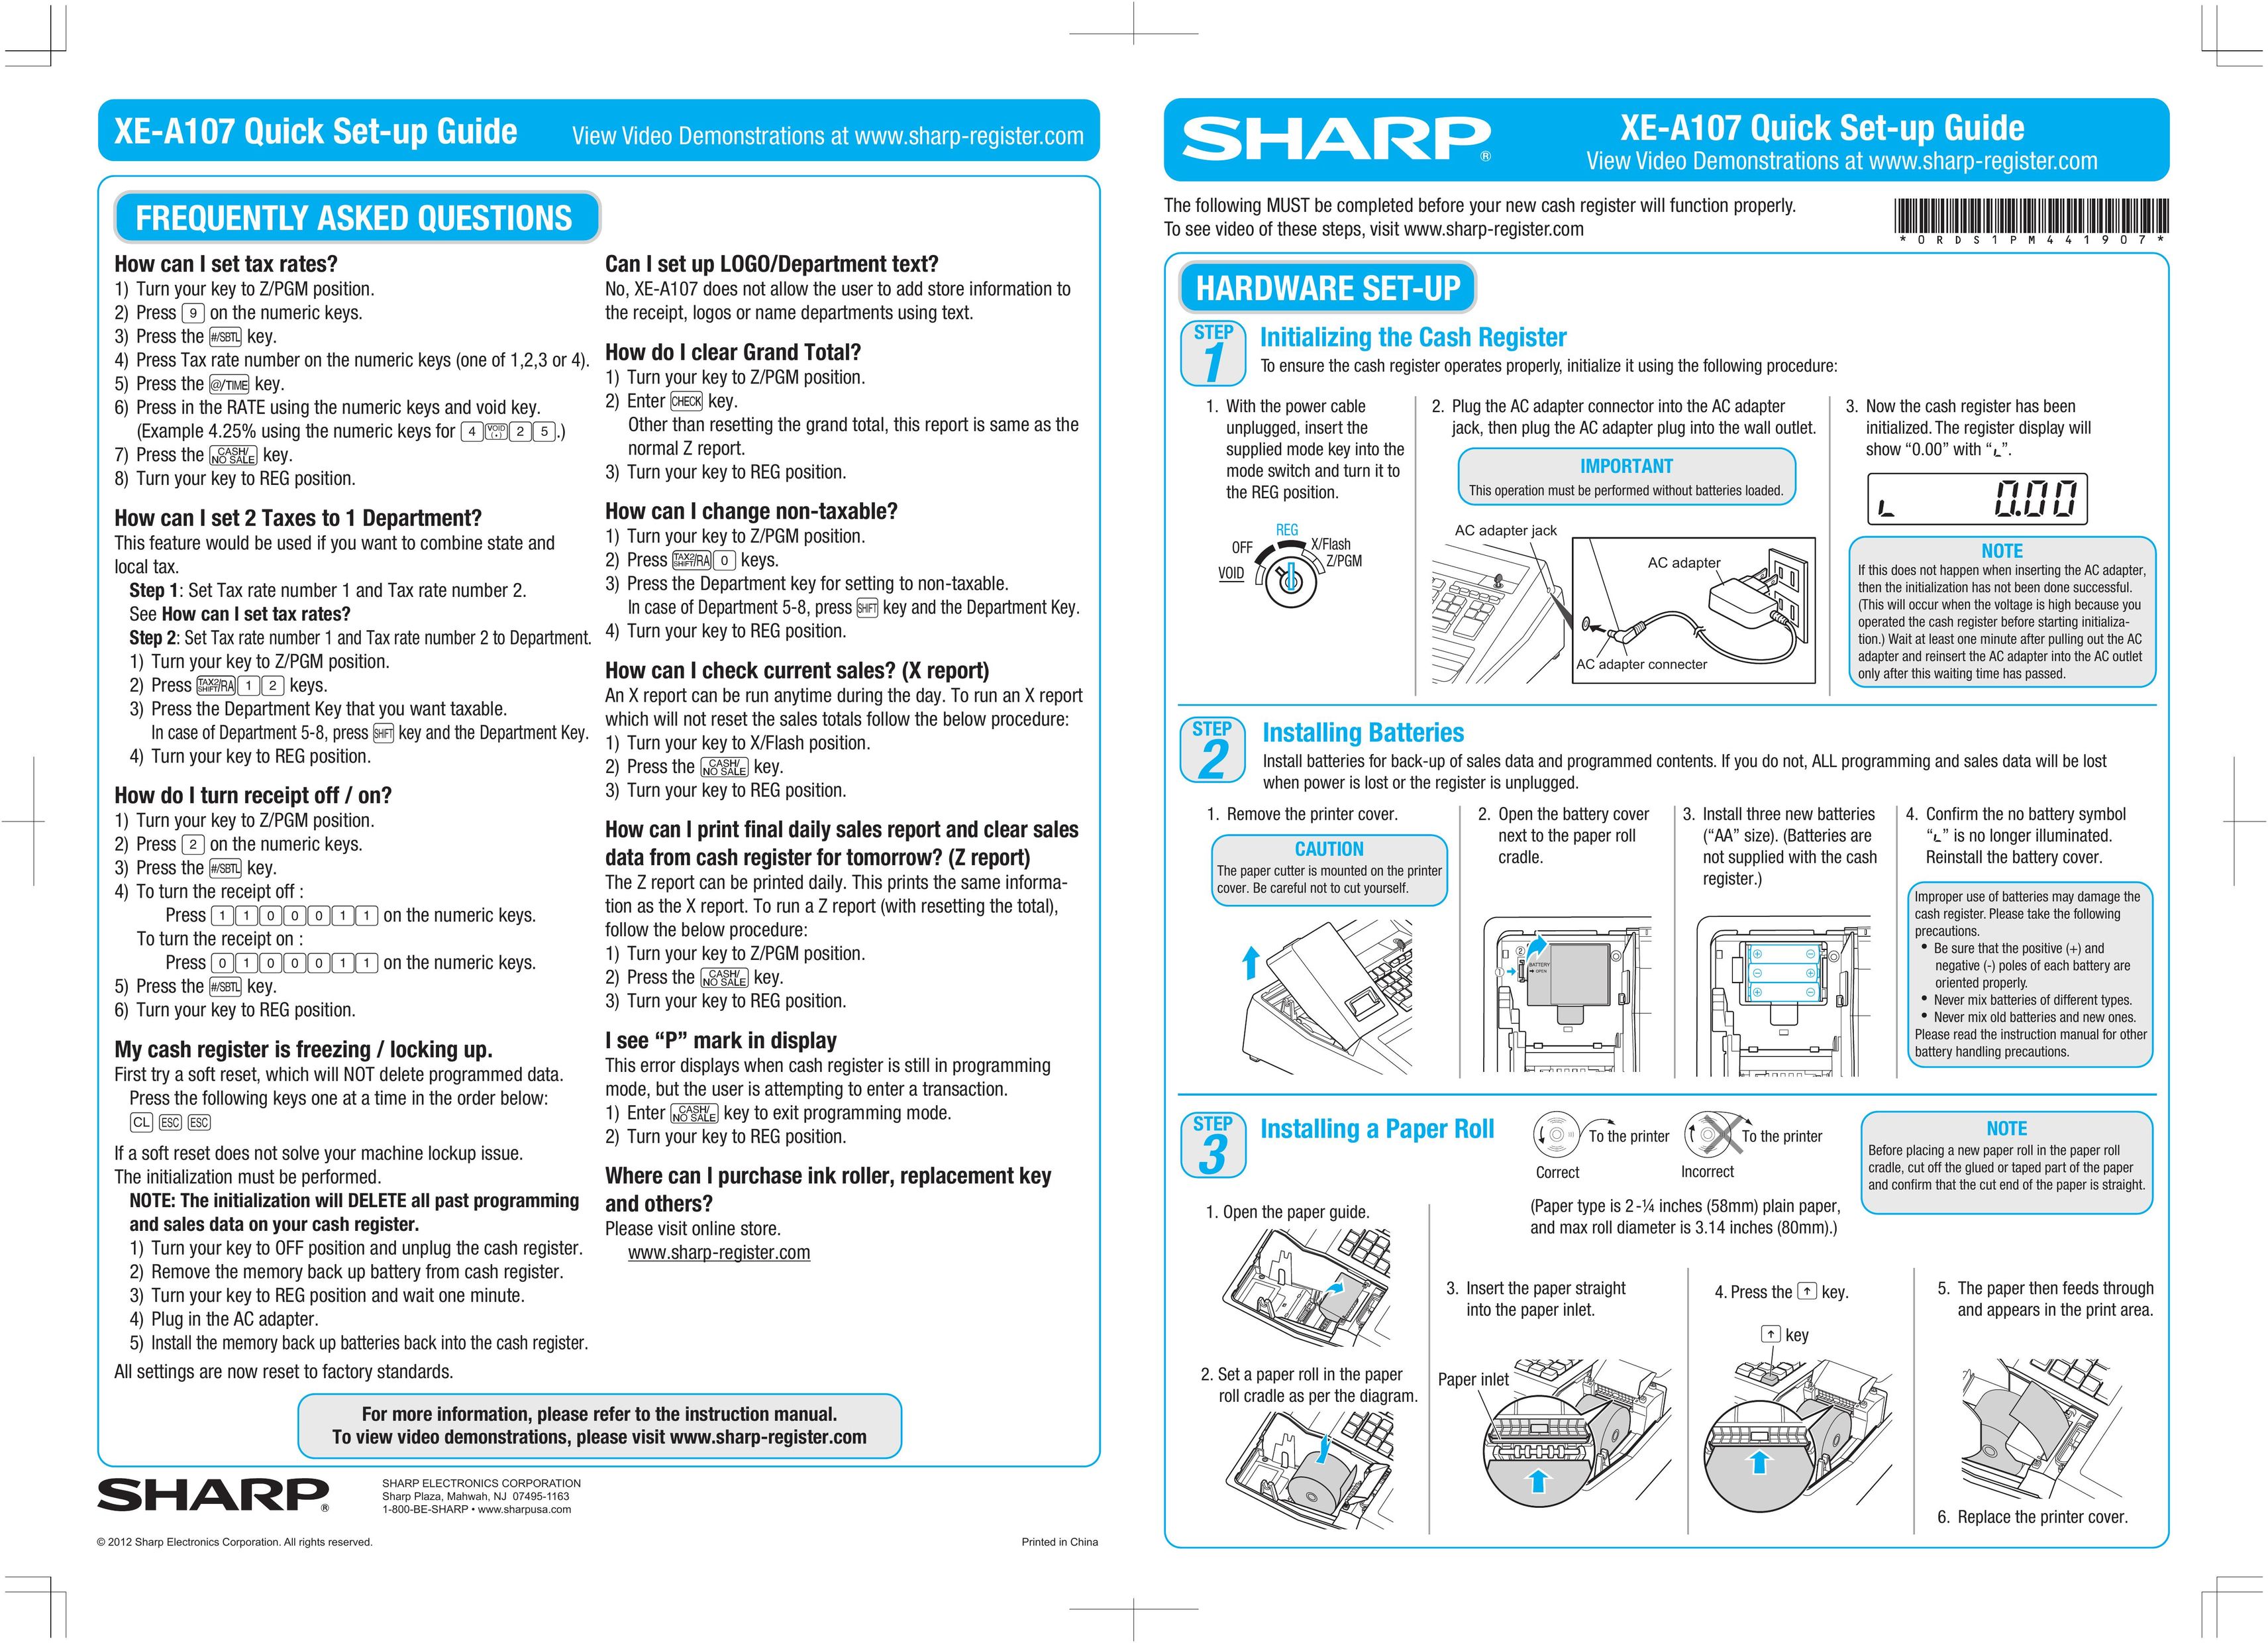 Sharp XE-A107 Cash Register User Manual